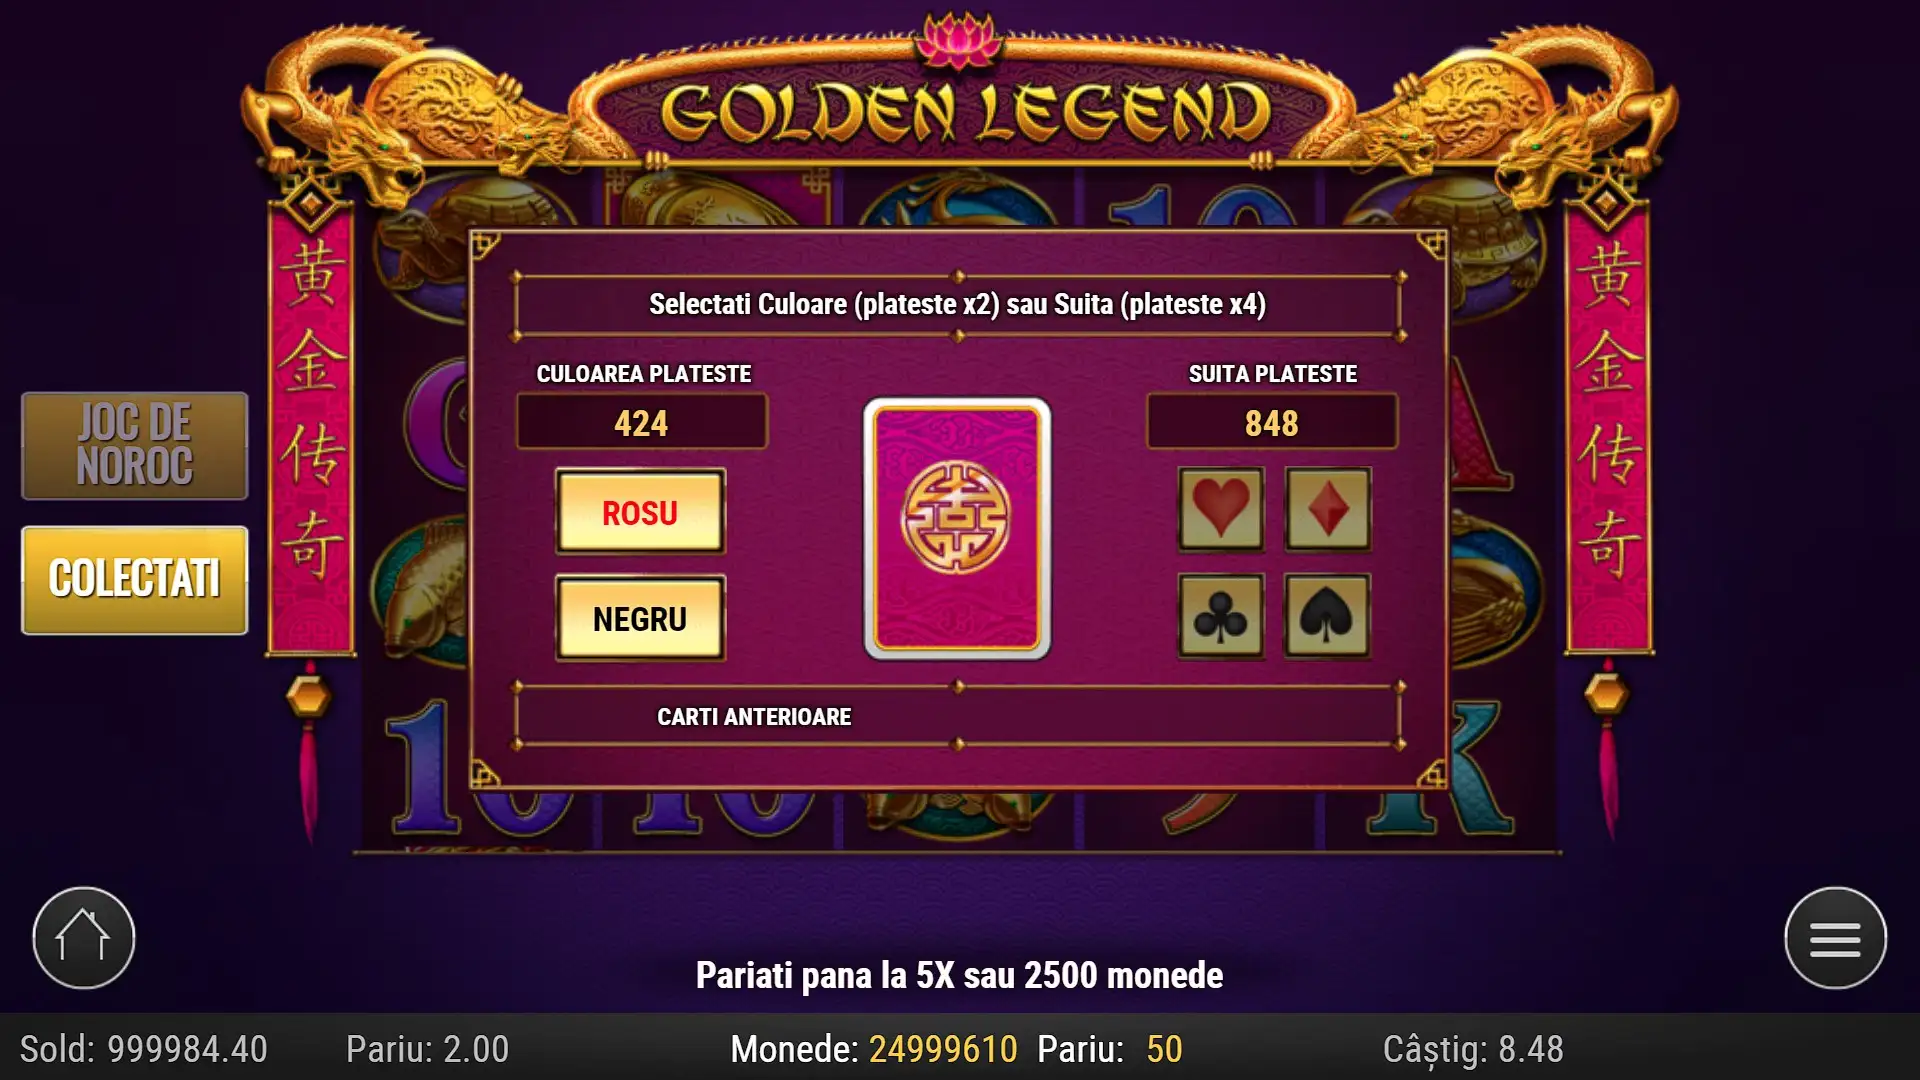 Gamble Pacanele gratis Golden Legend